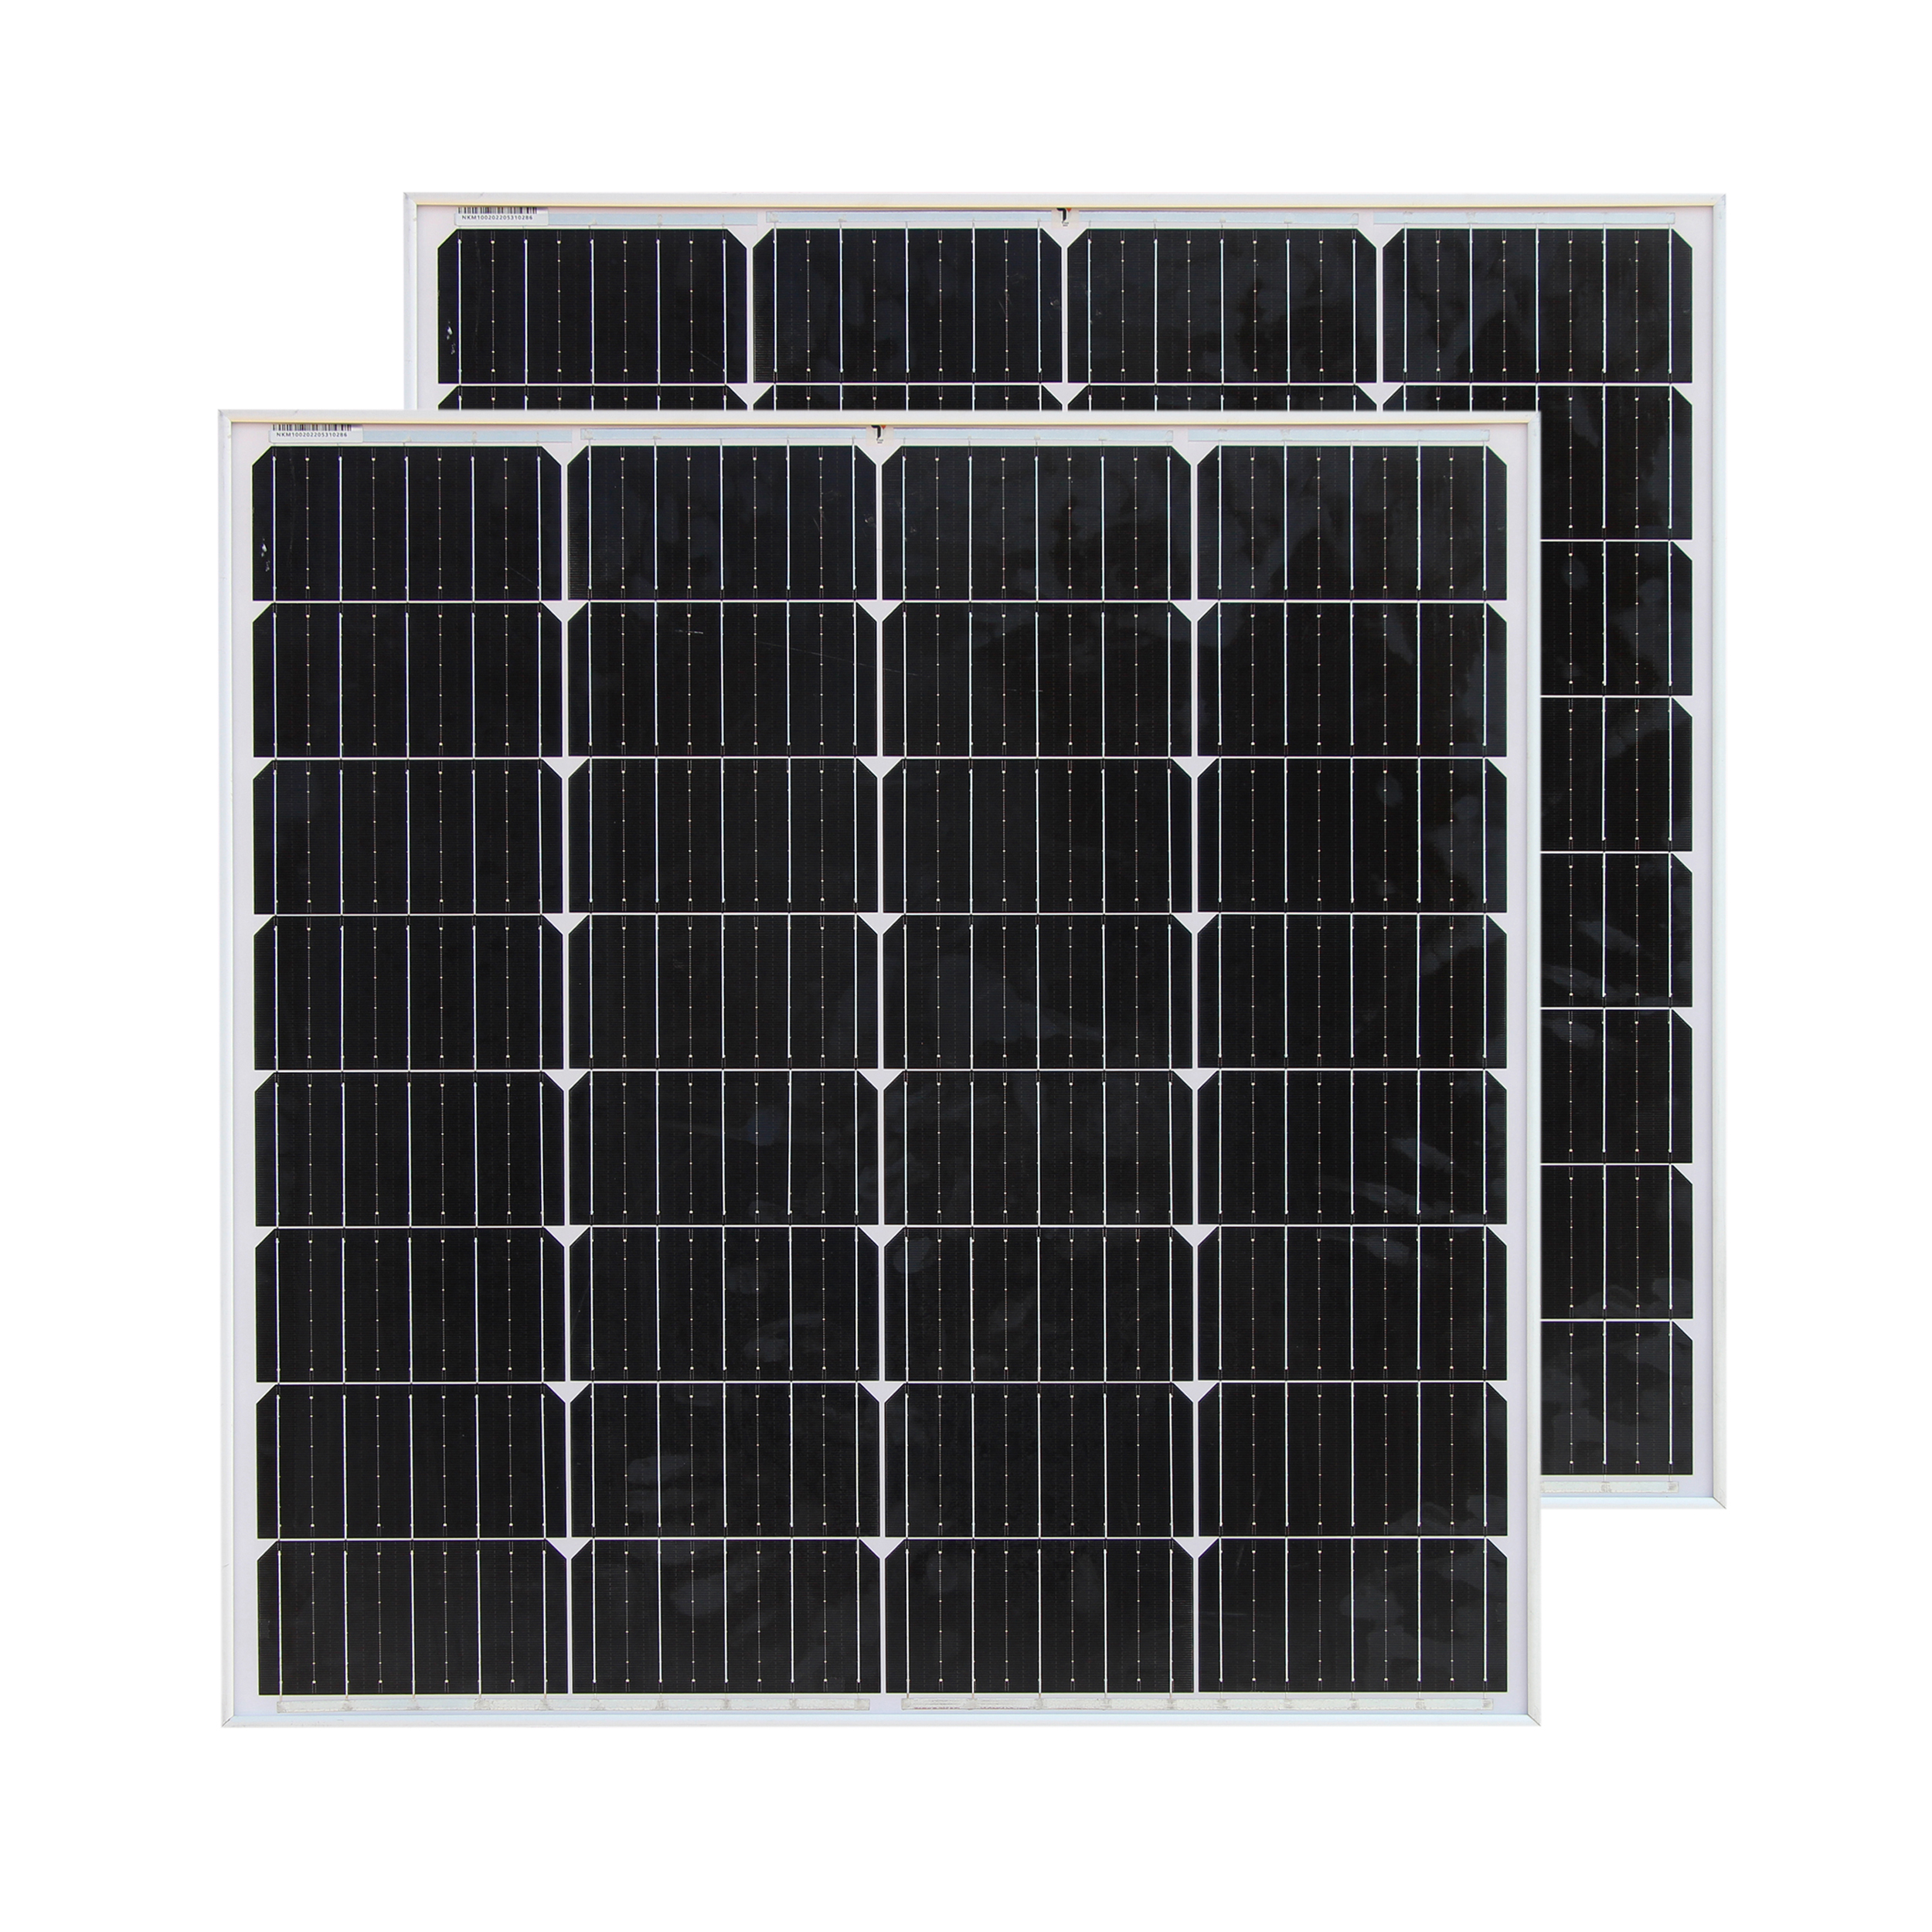 نکته خرید - قیمت روز پنل خورشیدی تیسو مدل TM100W-18v ظرفیت 100وات مجموعه 2 عددی خرید